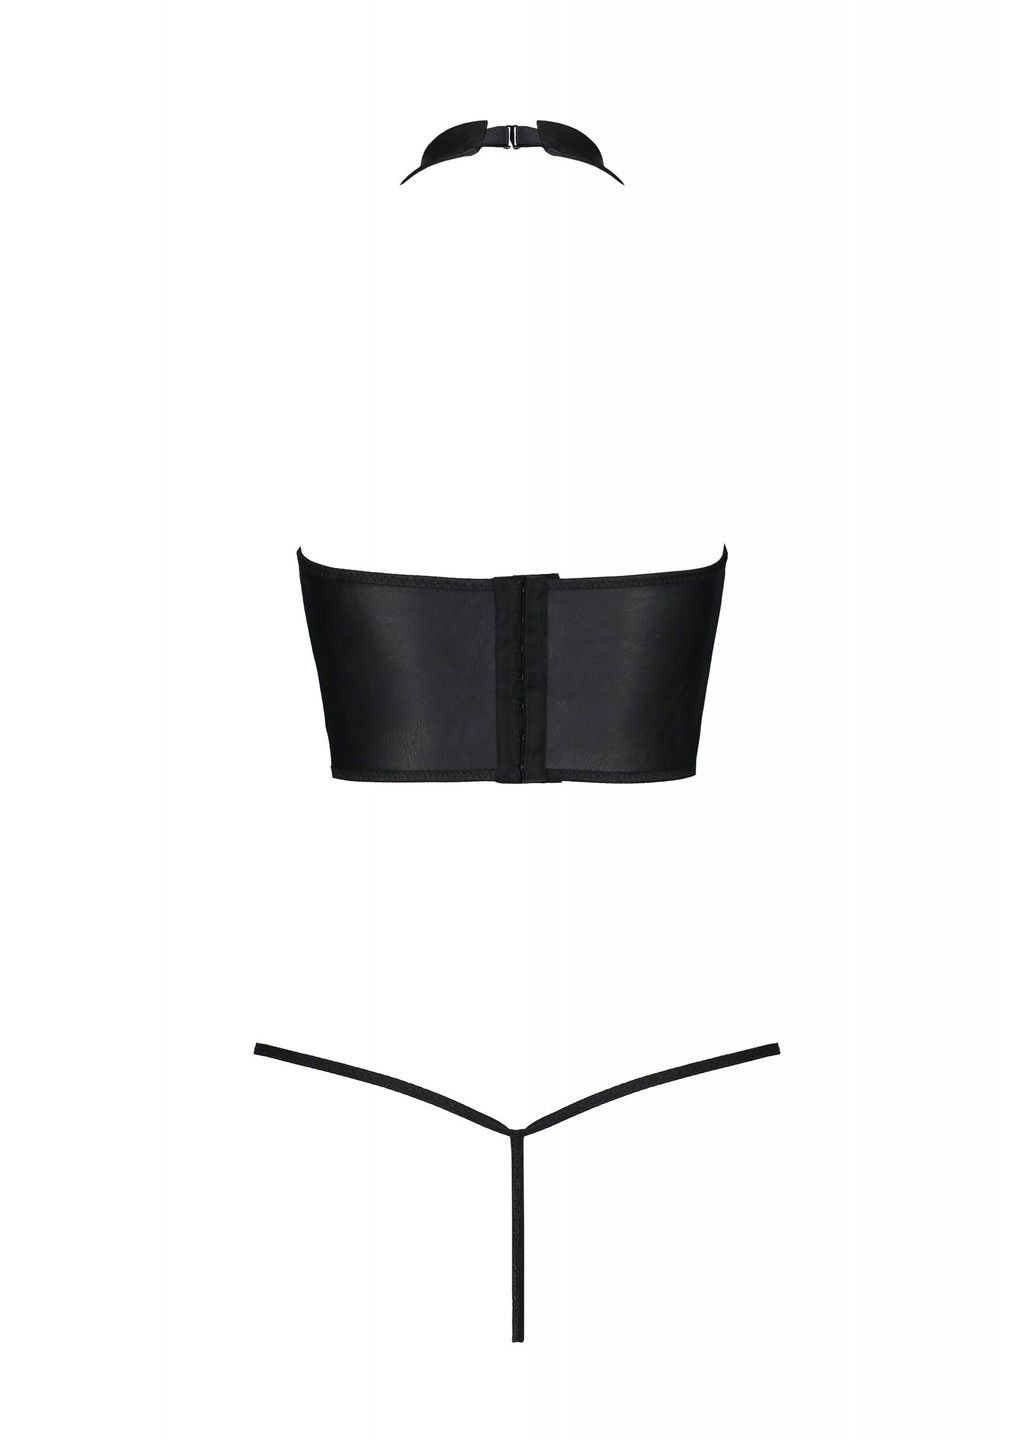 Черный комплект из эко-кожи с открытой грудью s/m black genevia set with open bra- Passion